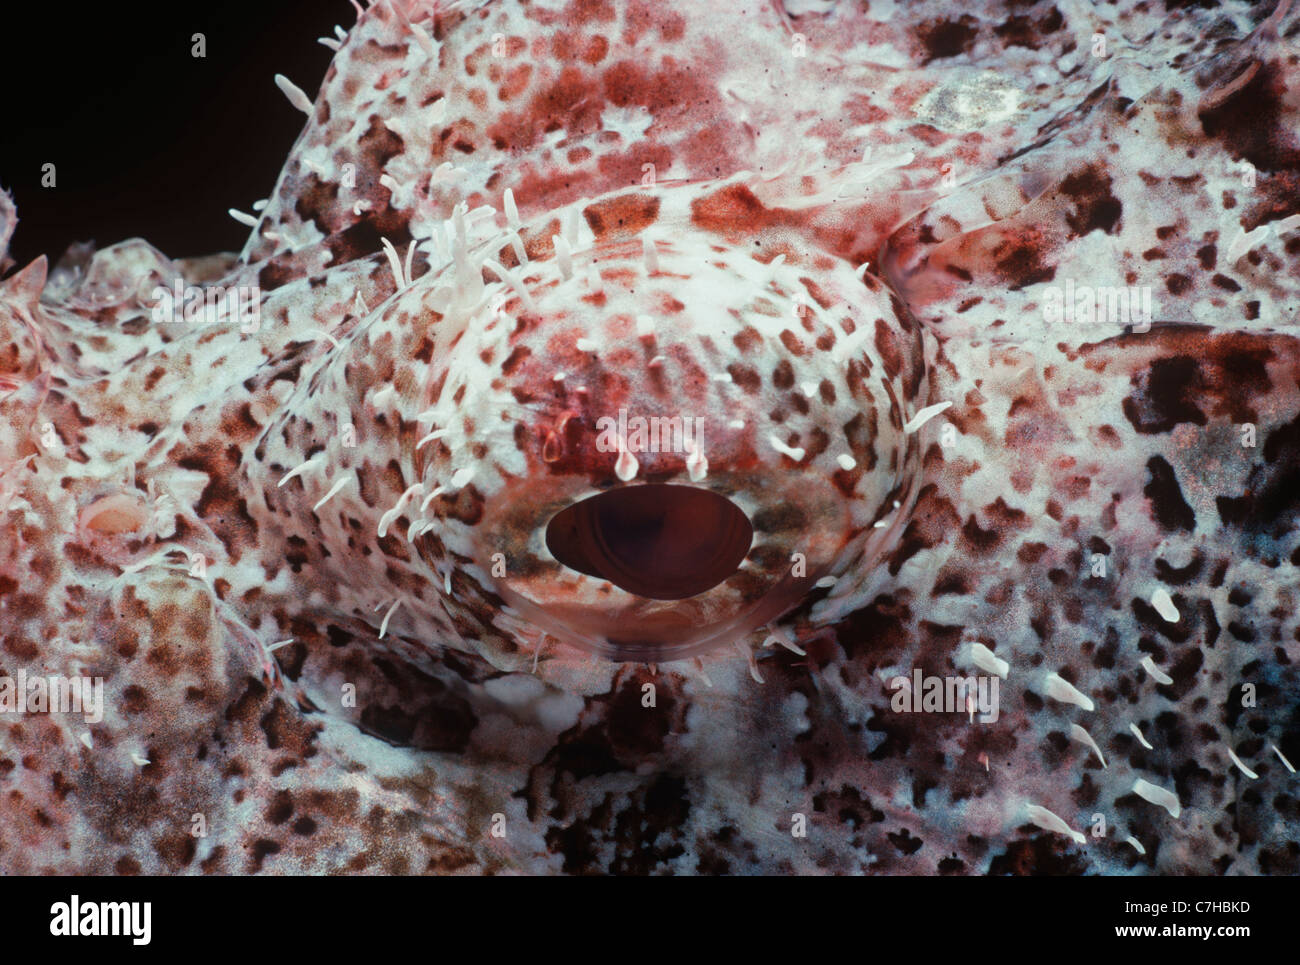 D'un œil Tassled Scorpionfish toxiques (Scorpaneopsis oxcephalus). Egypte - Mer Rouge Banque D'Images